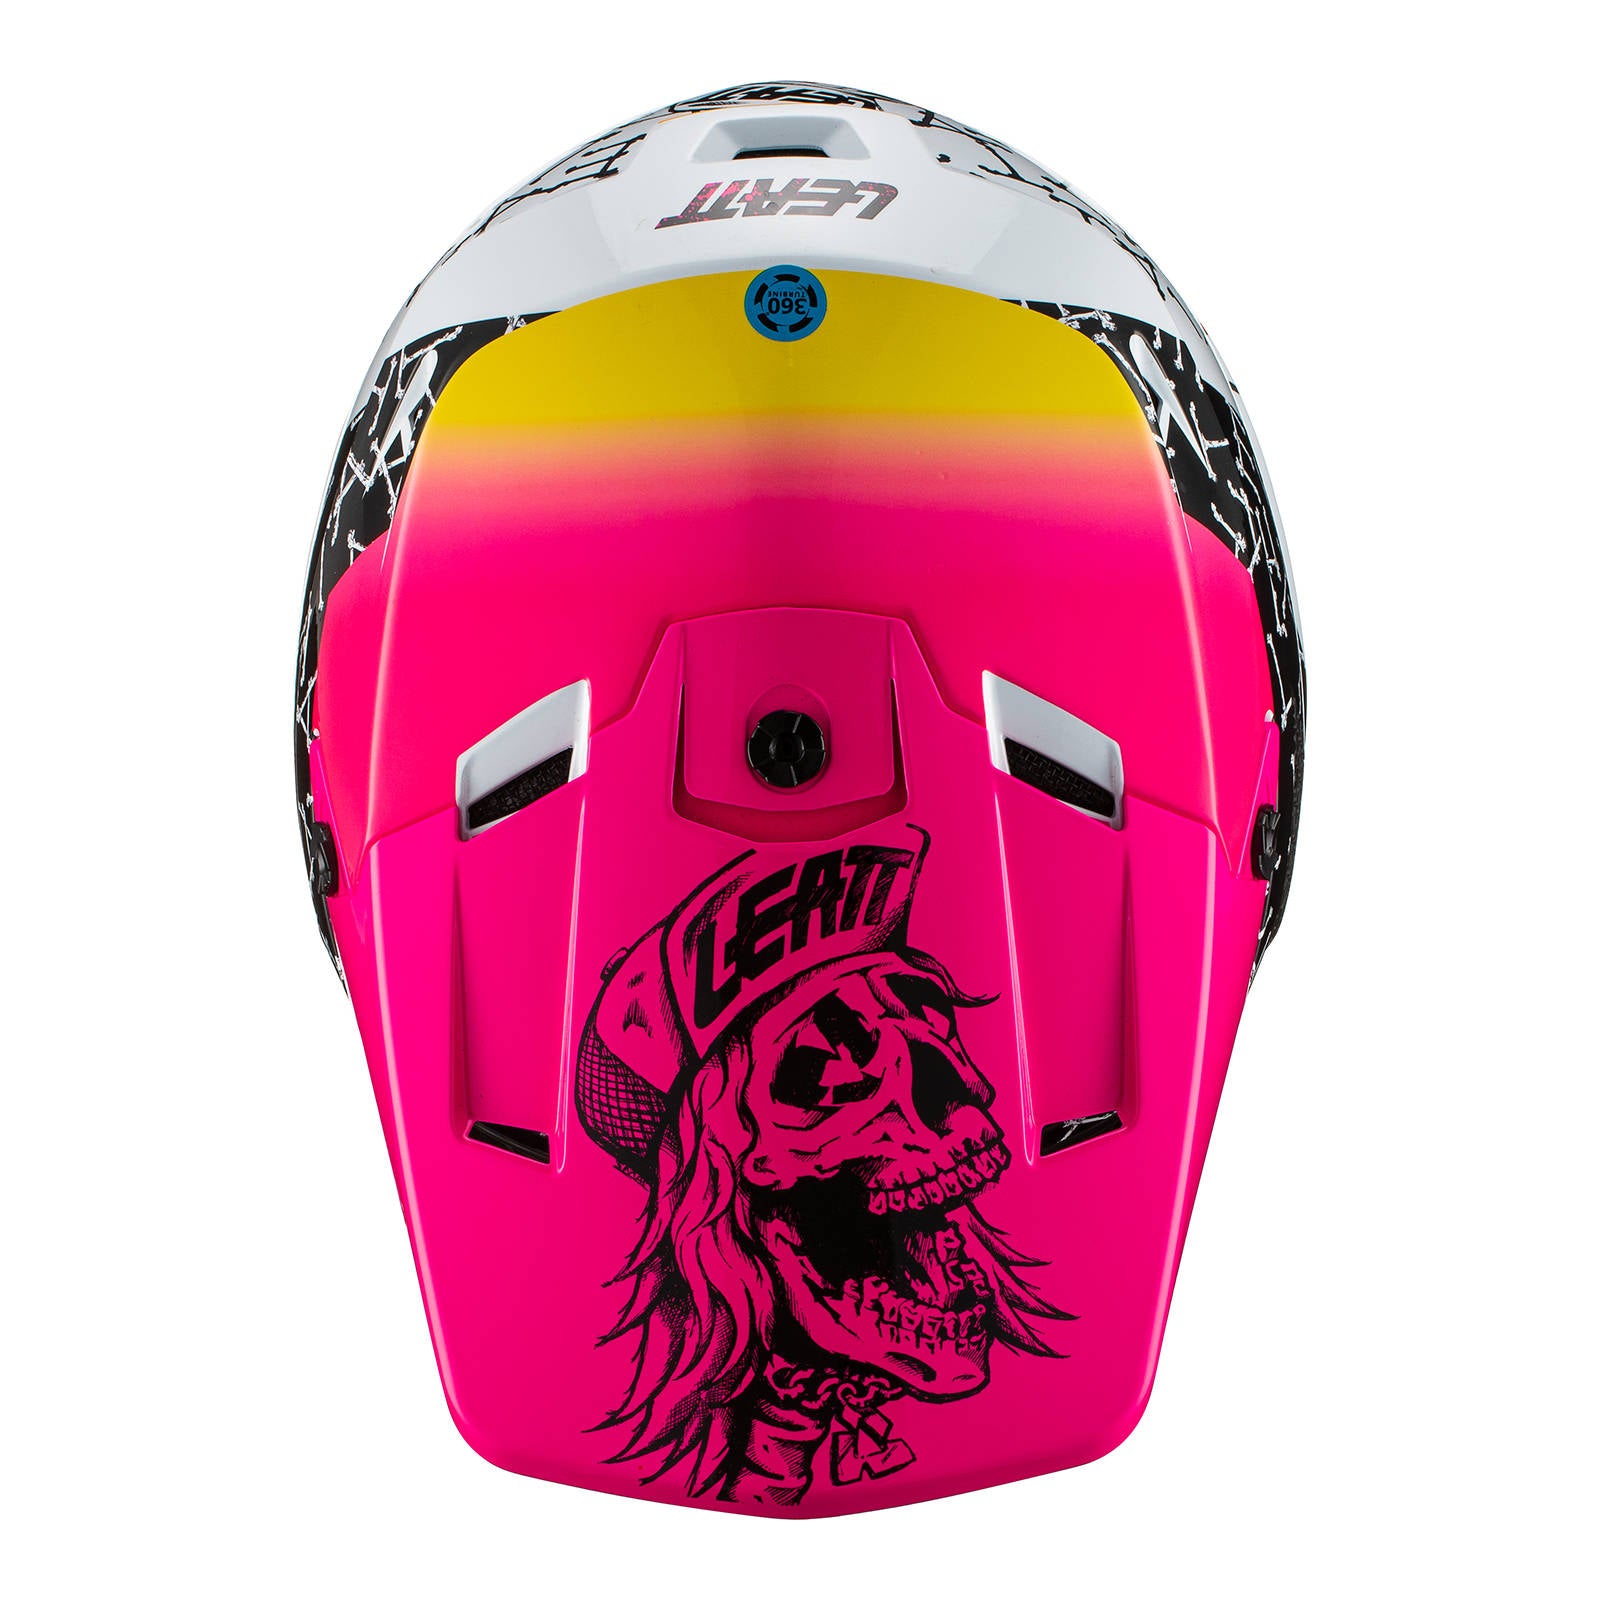 New LEATT 2021 Helmet Moto 3.5 V21.2 Skull (LG) LE1021000223